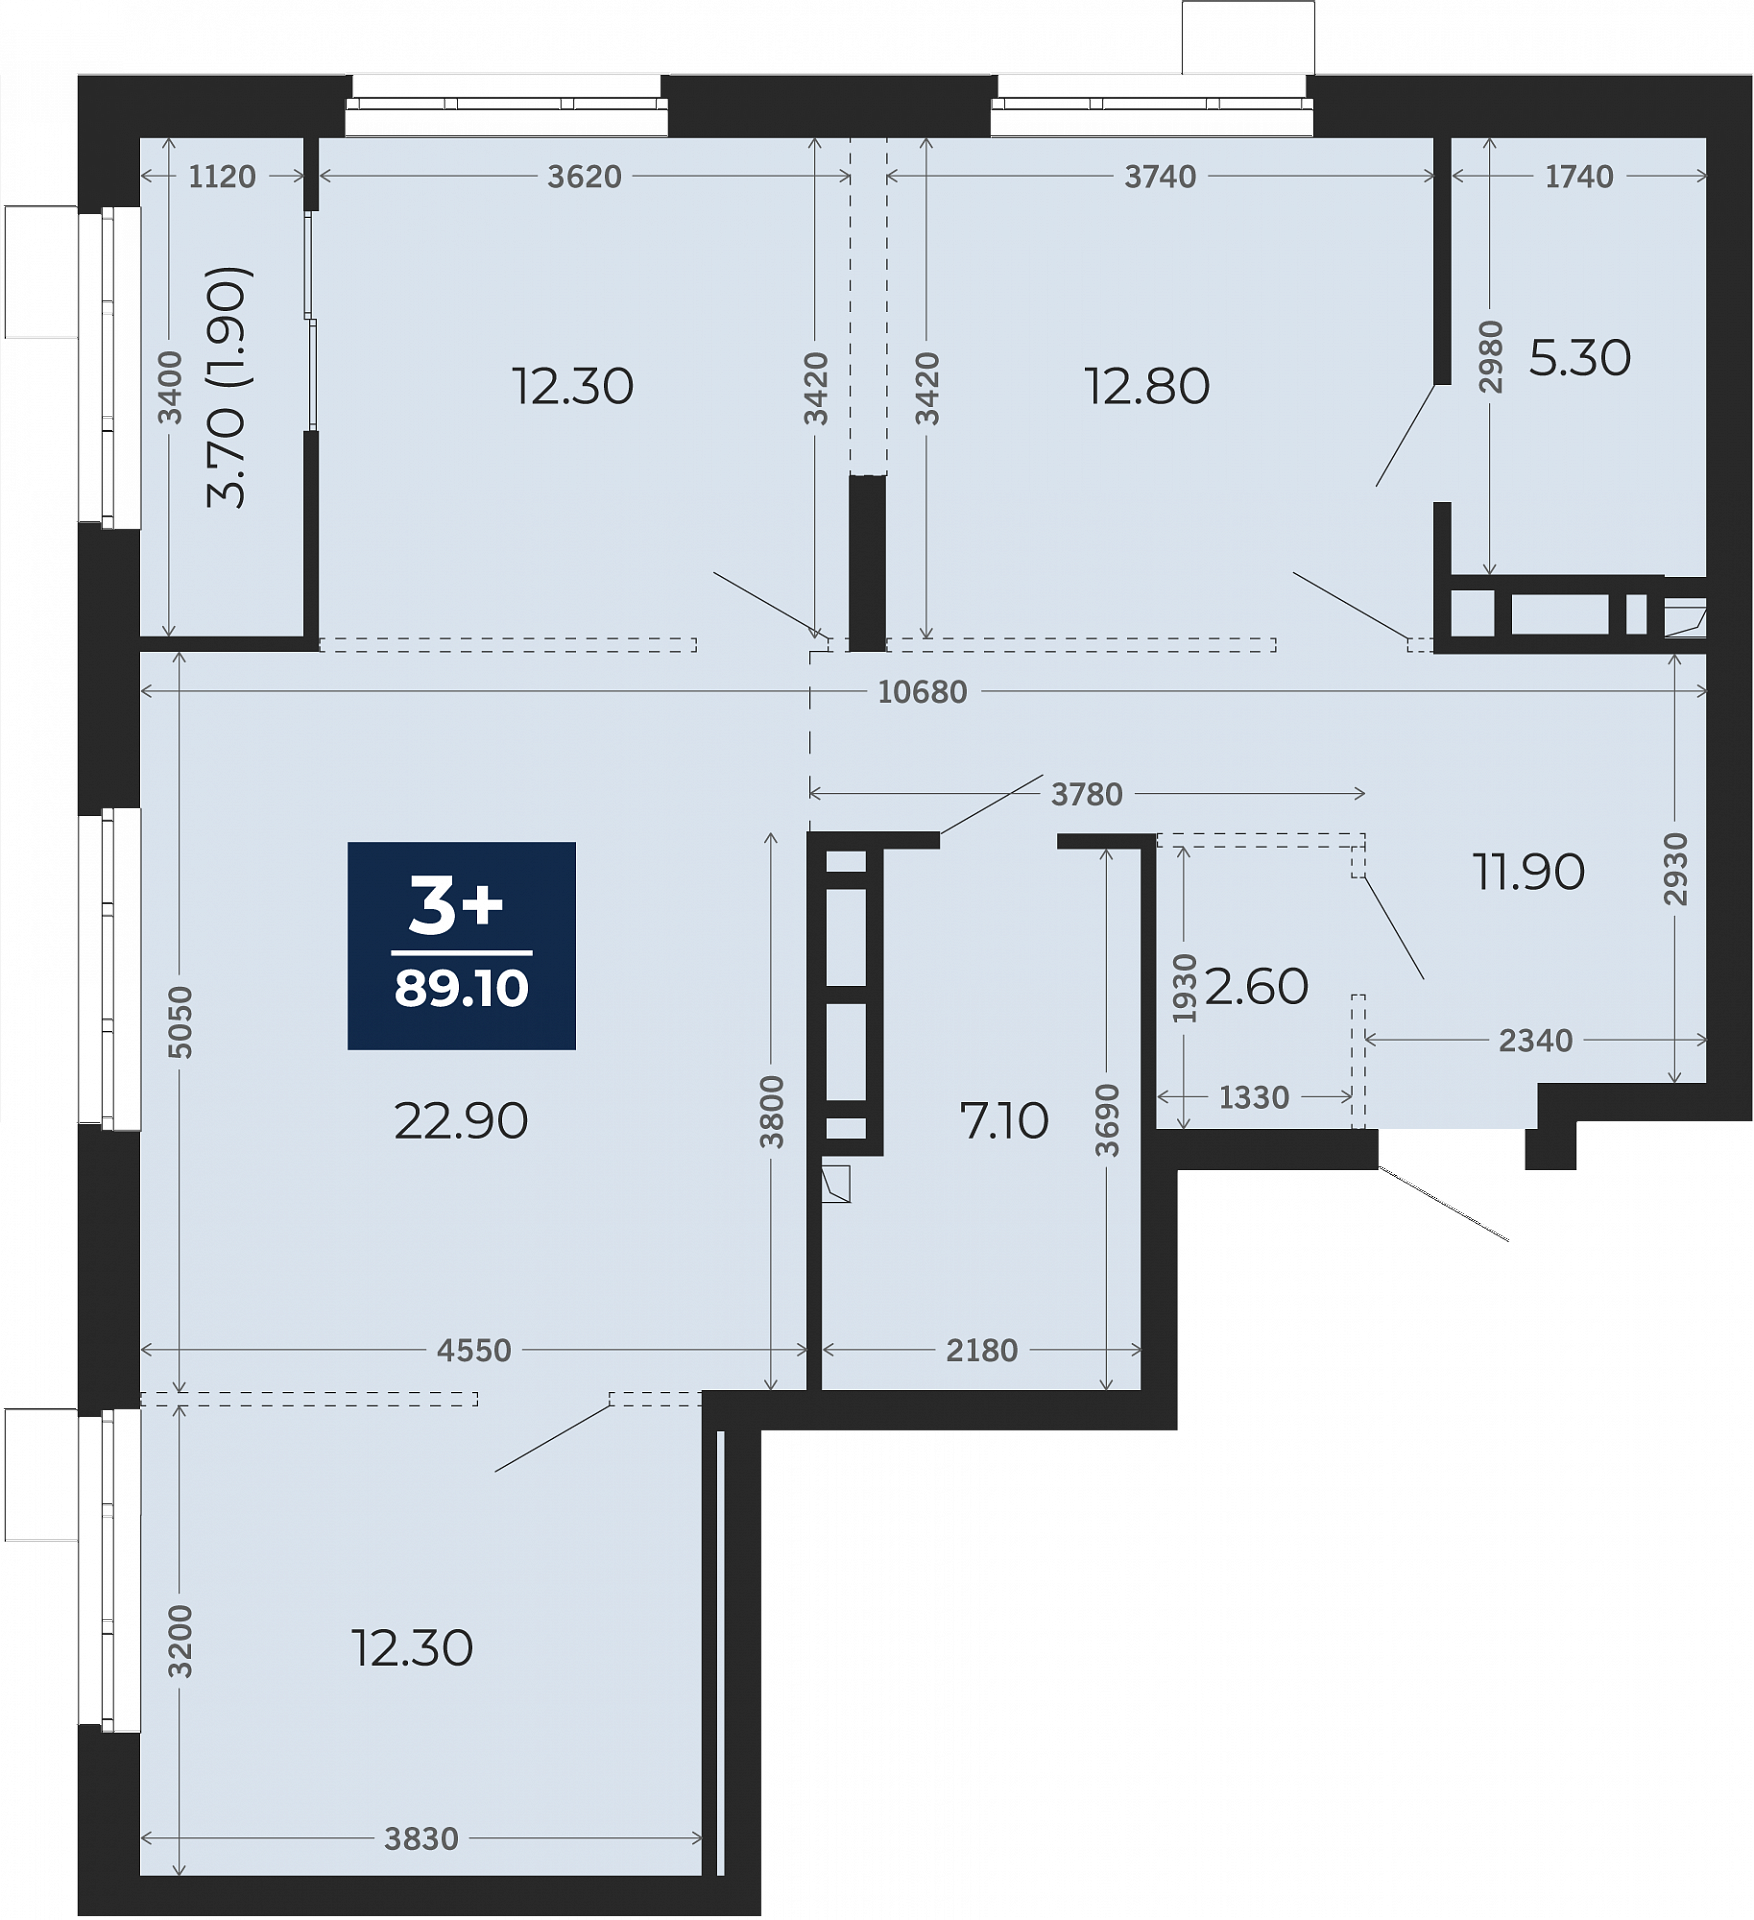 Квартира № 21, 3-комнатная, 89.1 кв. м, 4 этаж